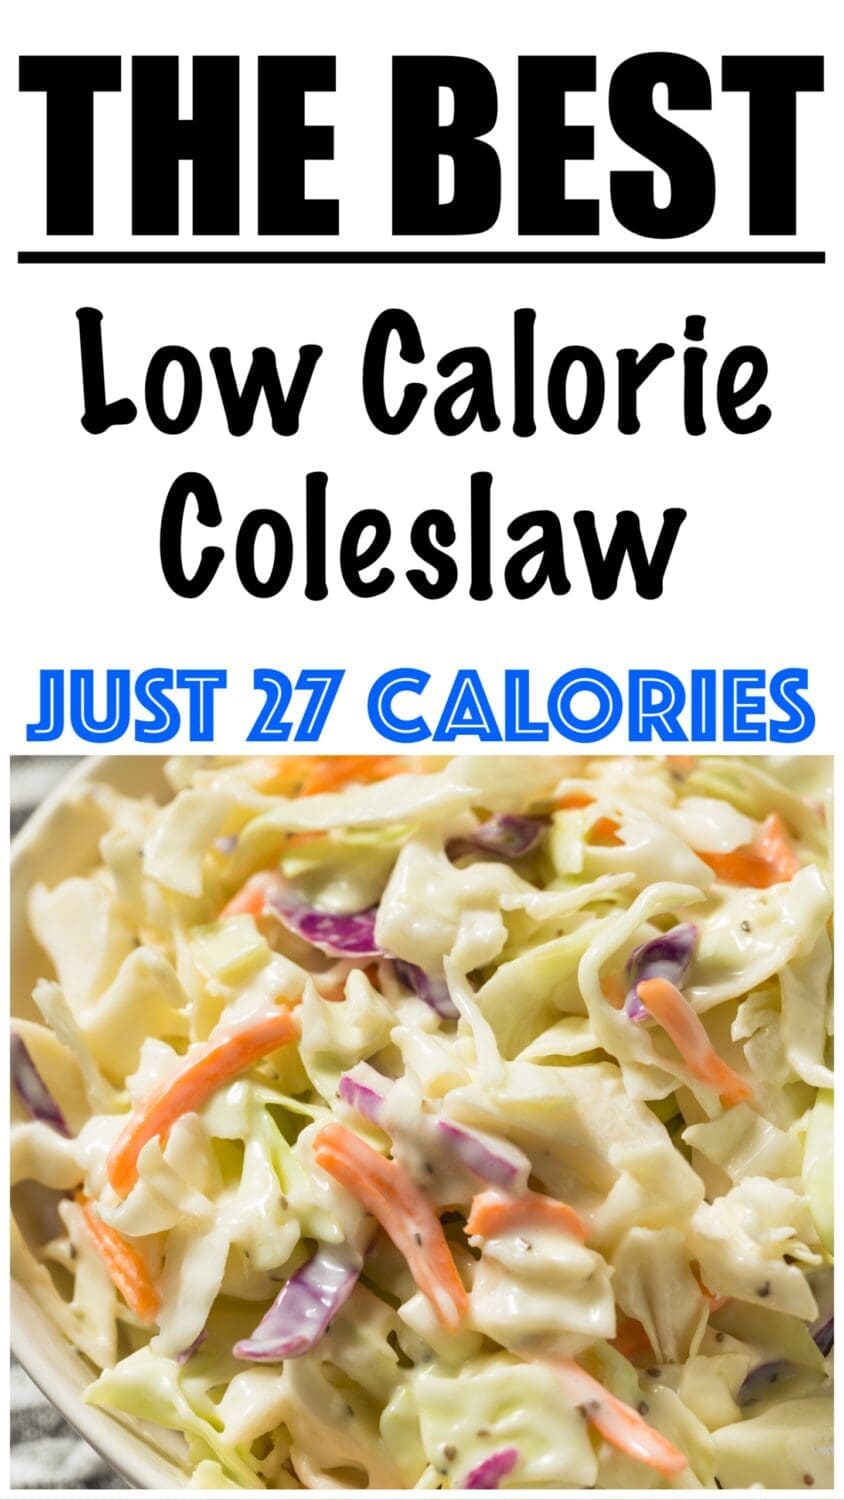 Low Calorie Coleslaw